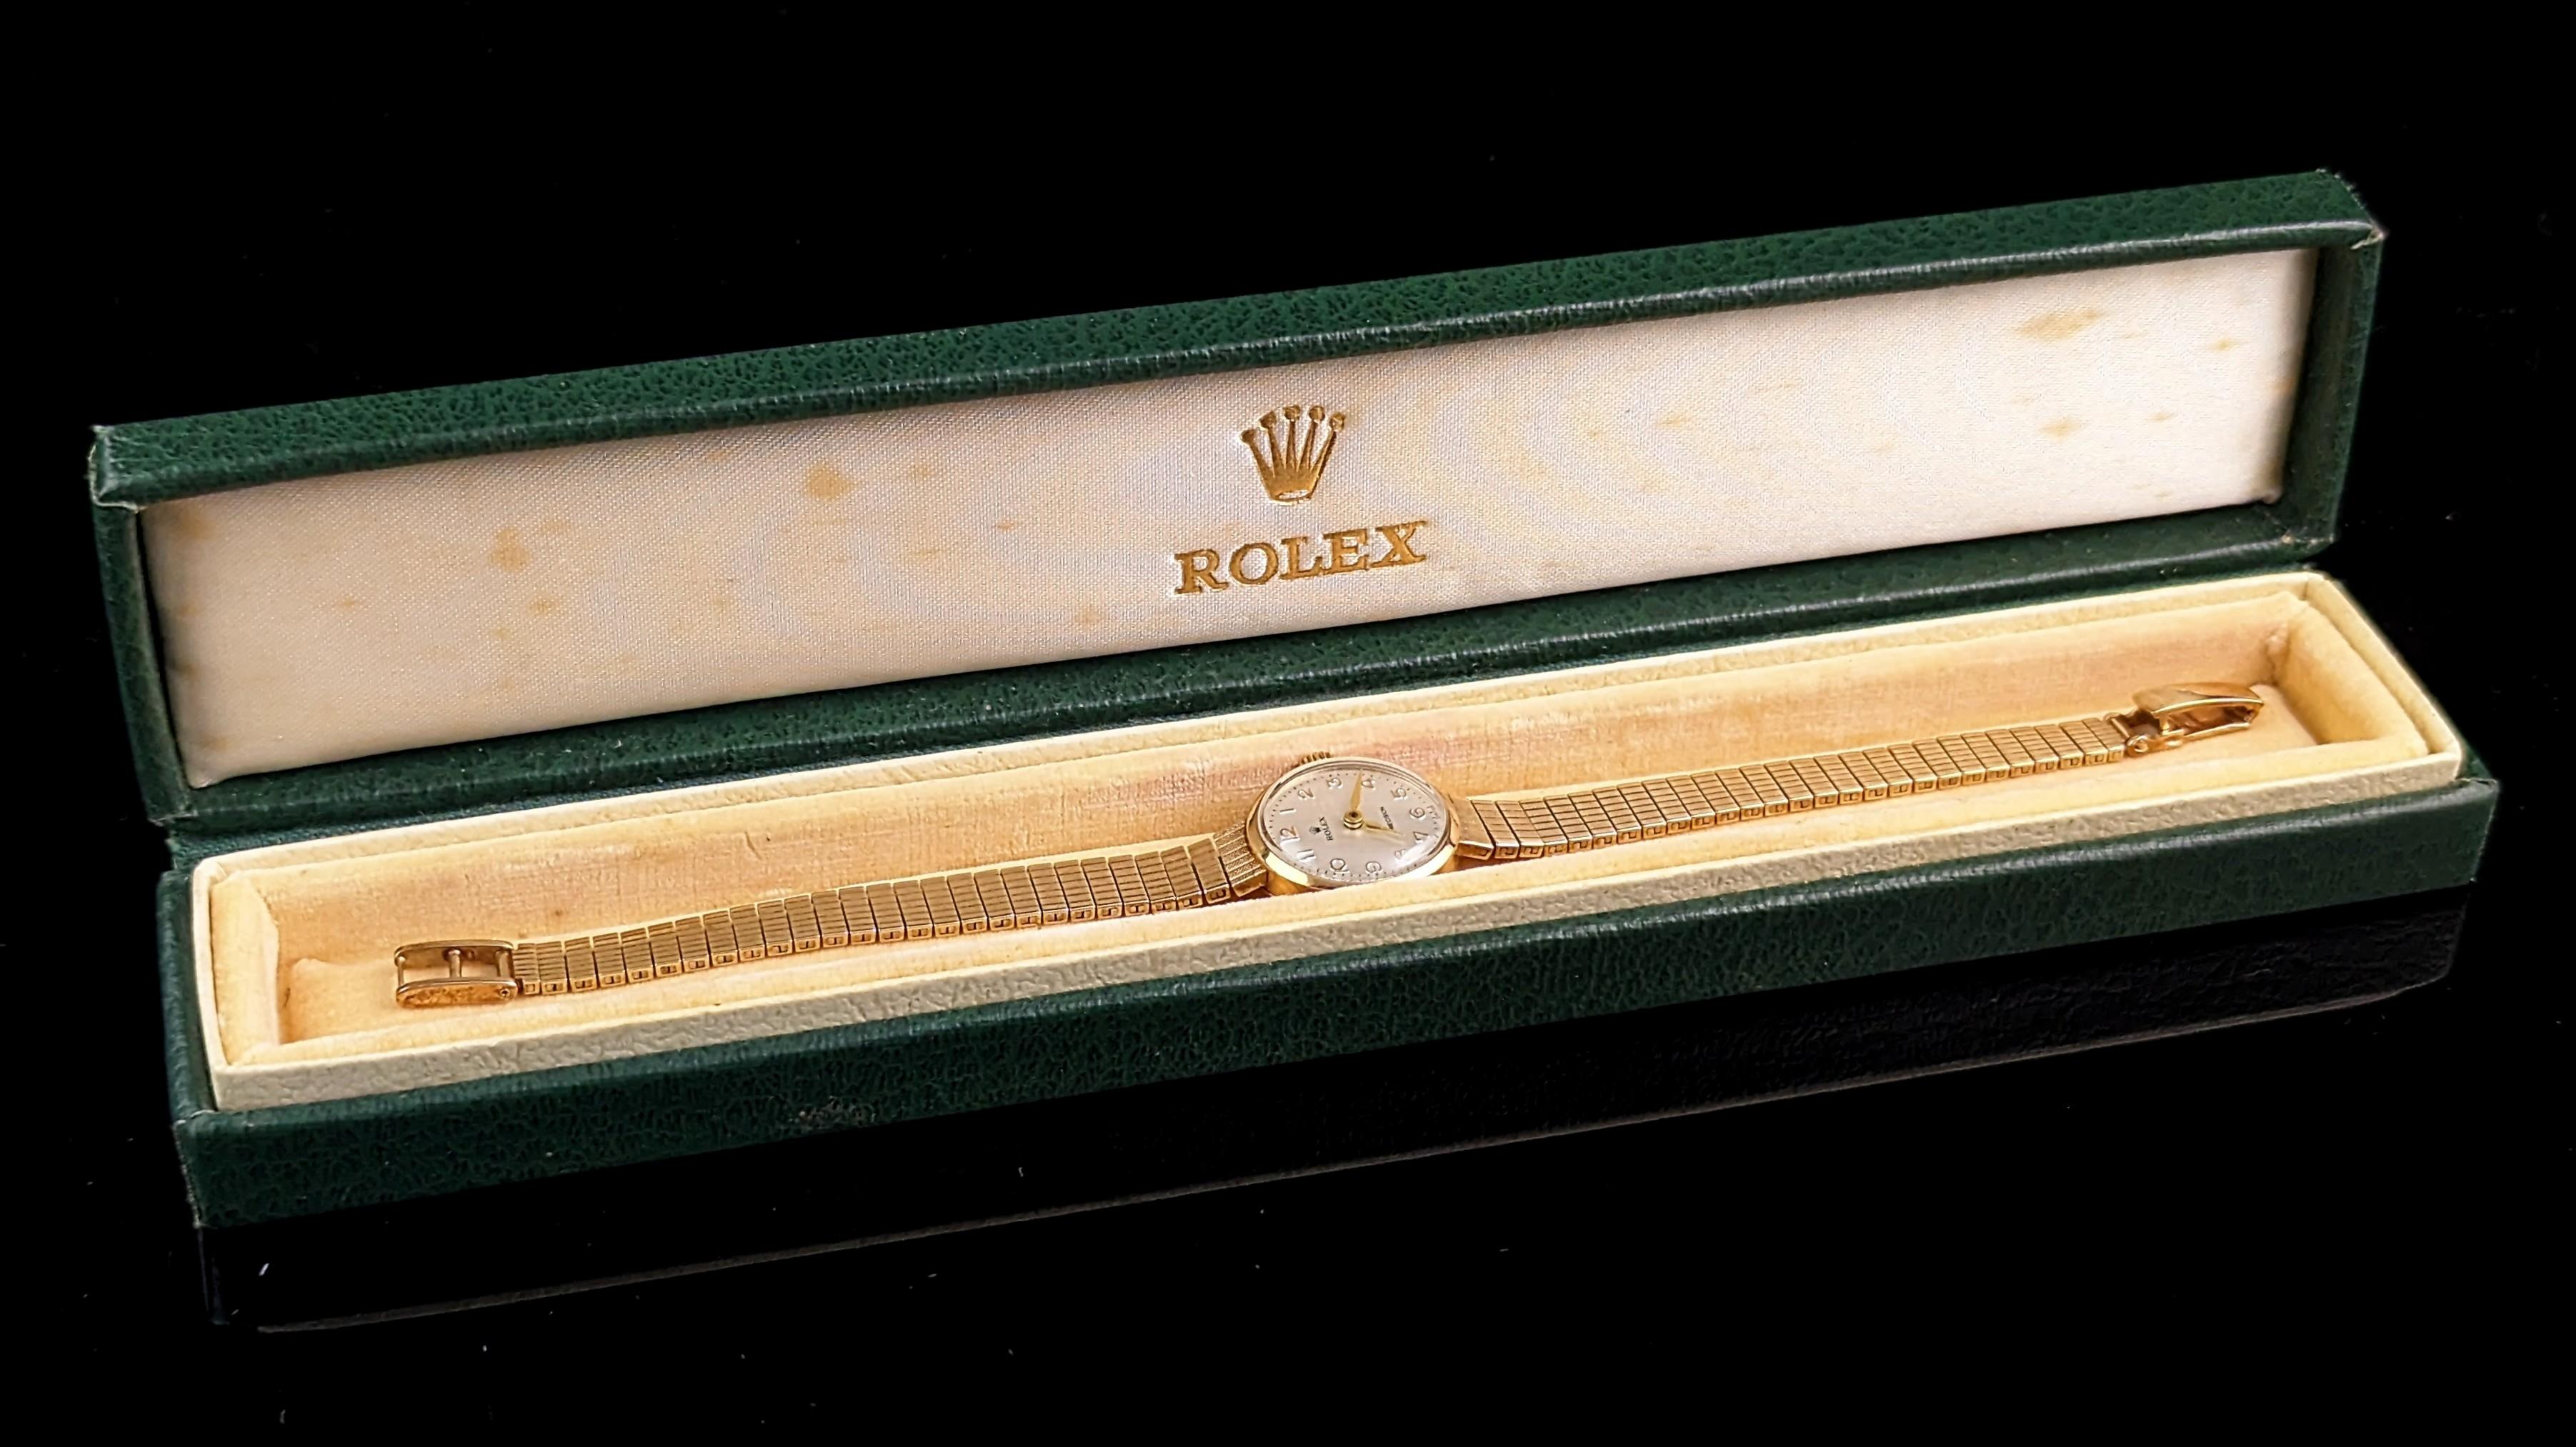 Cette montre-bracelet de précision Rolex en or 9ct pour dames est la pièce classique par excellence.

Elle présente un boîtier traditionnel de forme circulaire en or 9ct, marqué sur le boîtier extérieur et poinçonné à l'intérieur, la montre a un